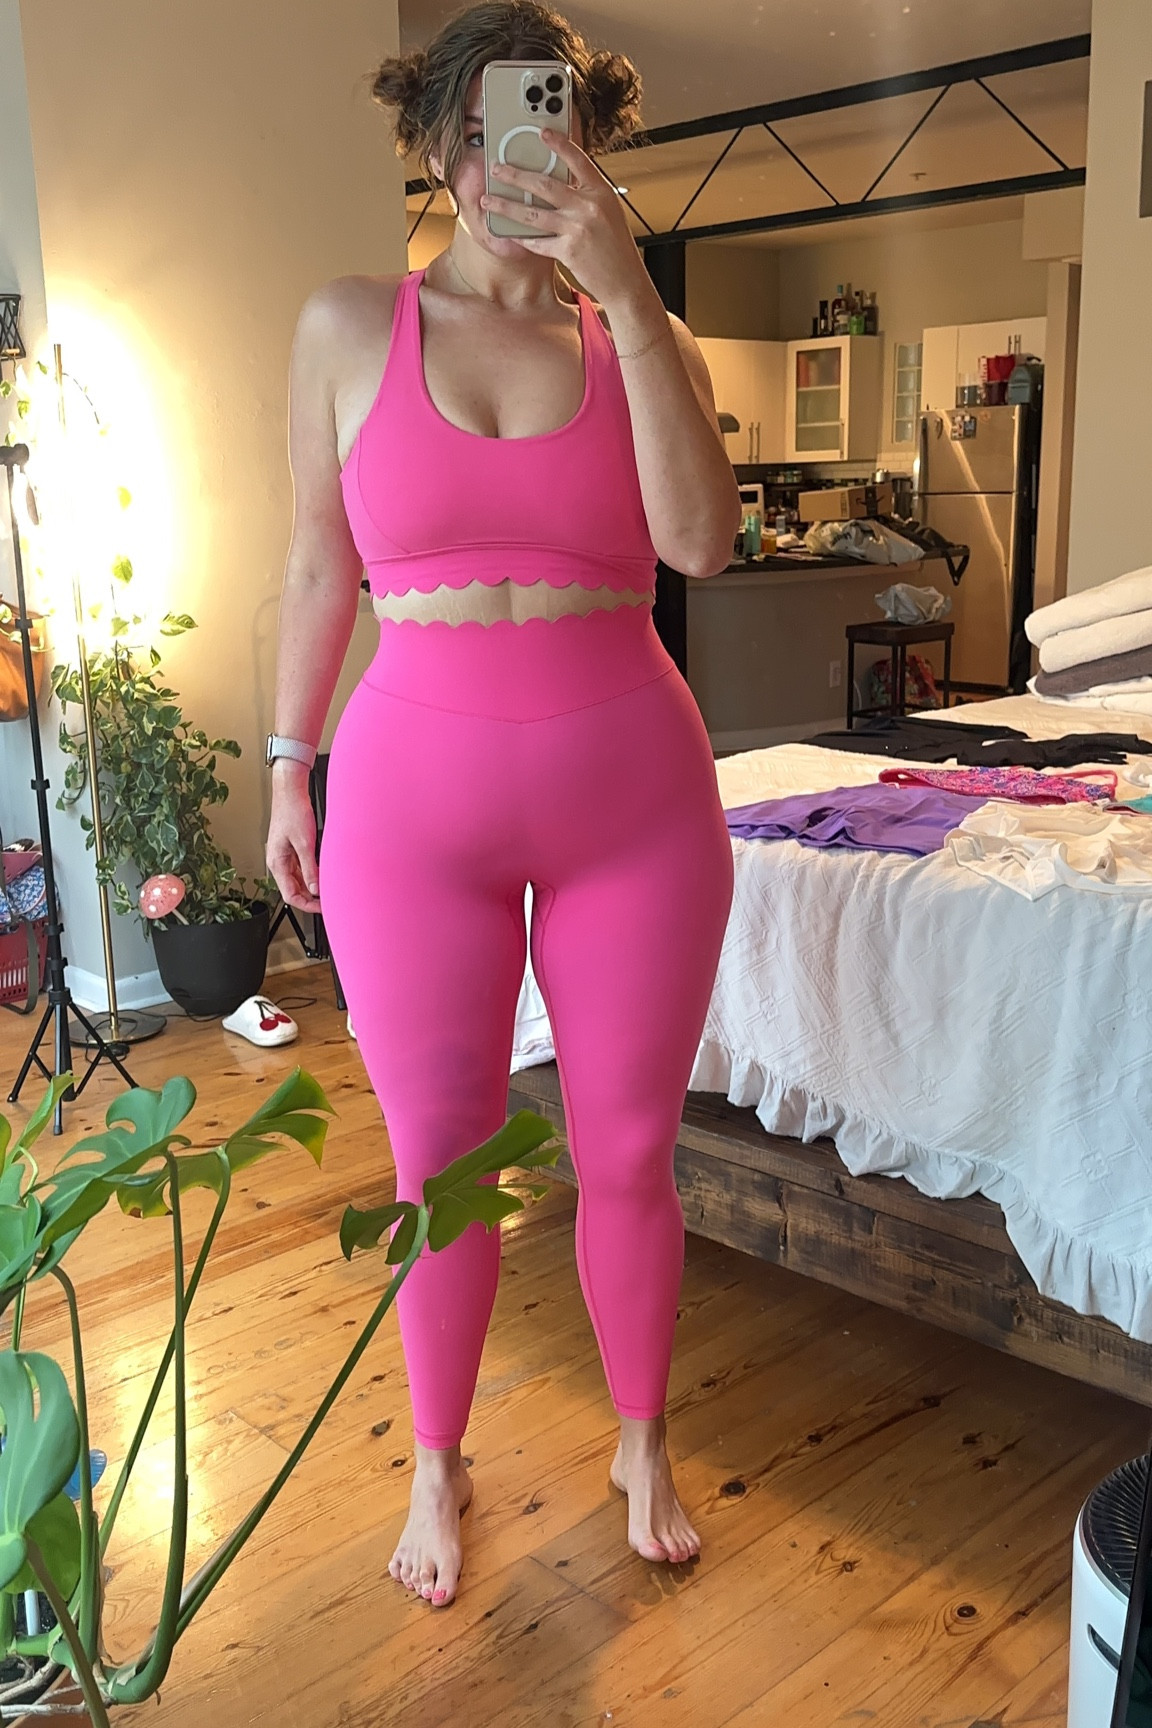 NEW BuffBunny Rosa Scallop Legging in Miami Vice Pink XXL